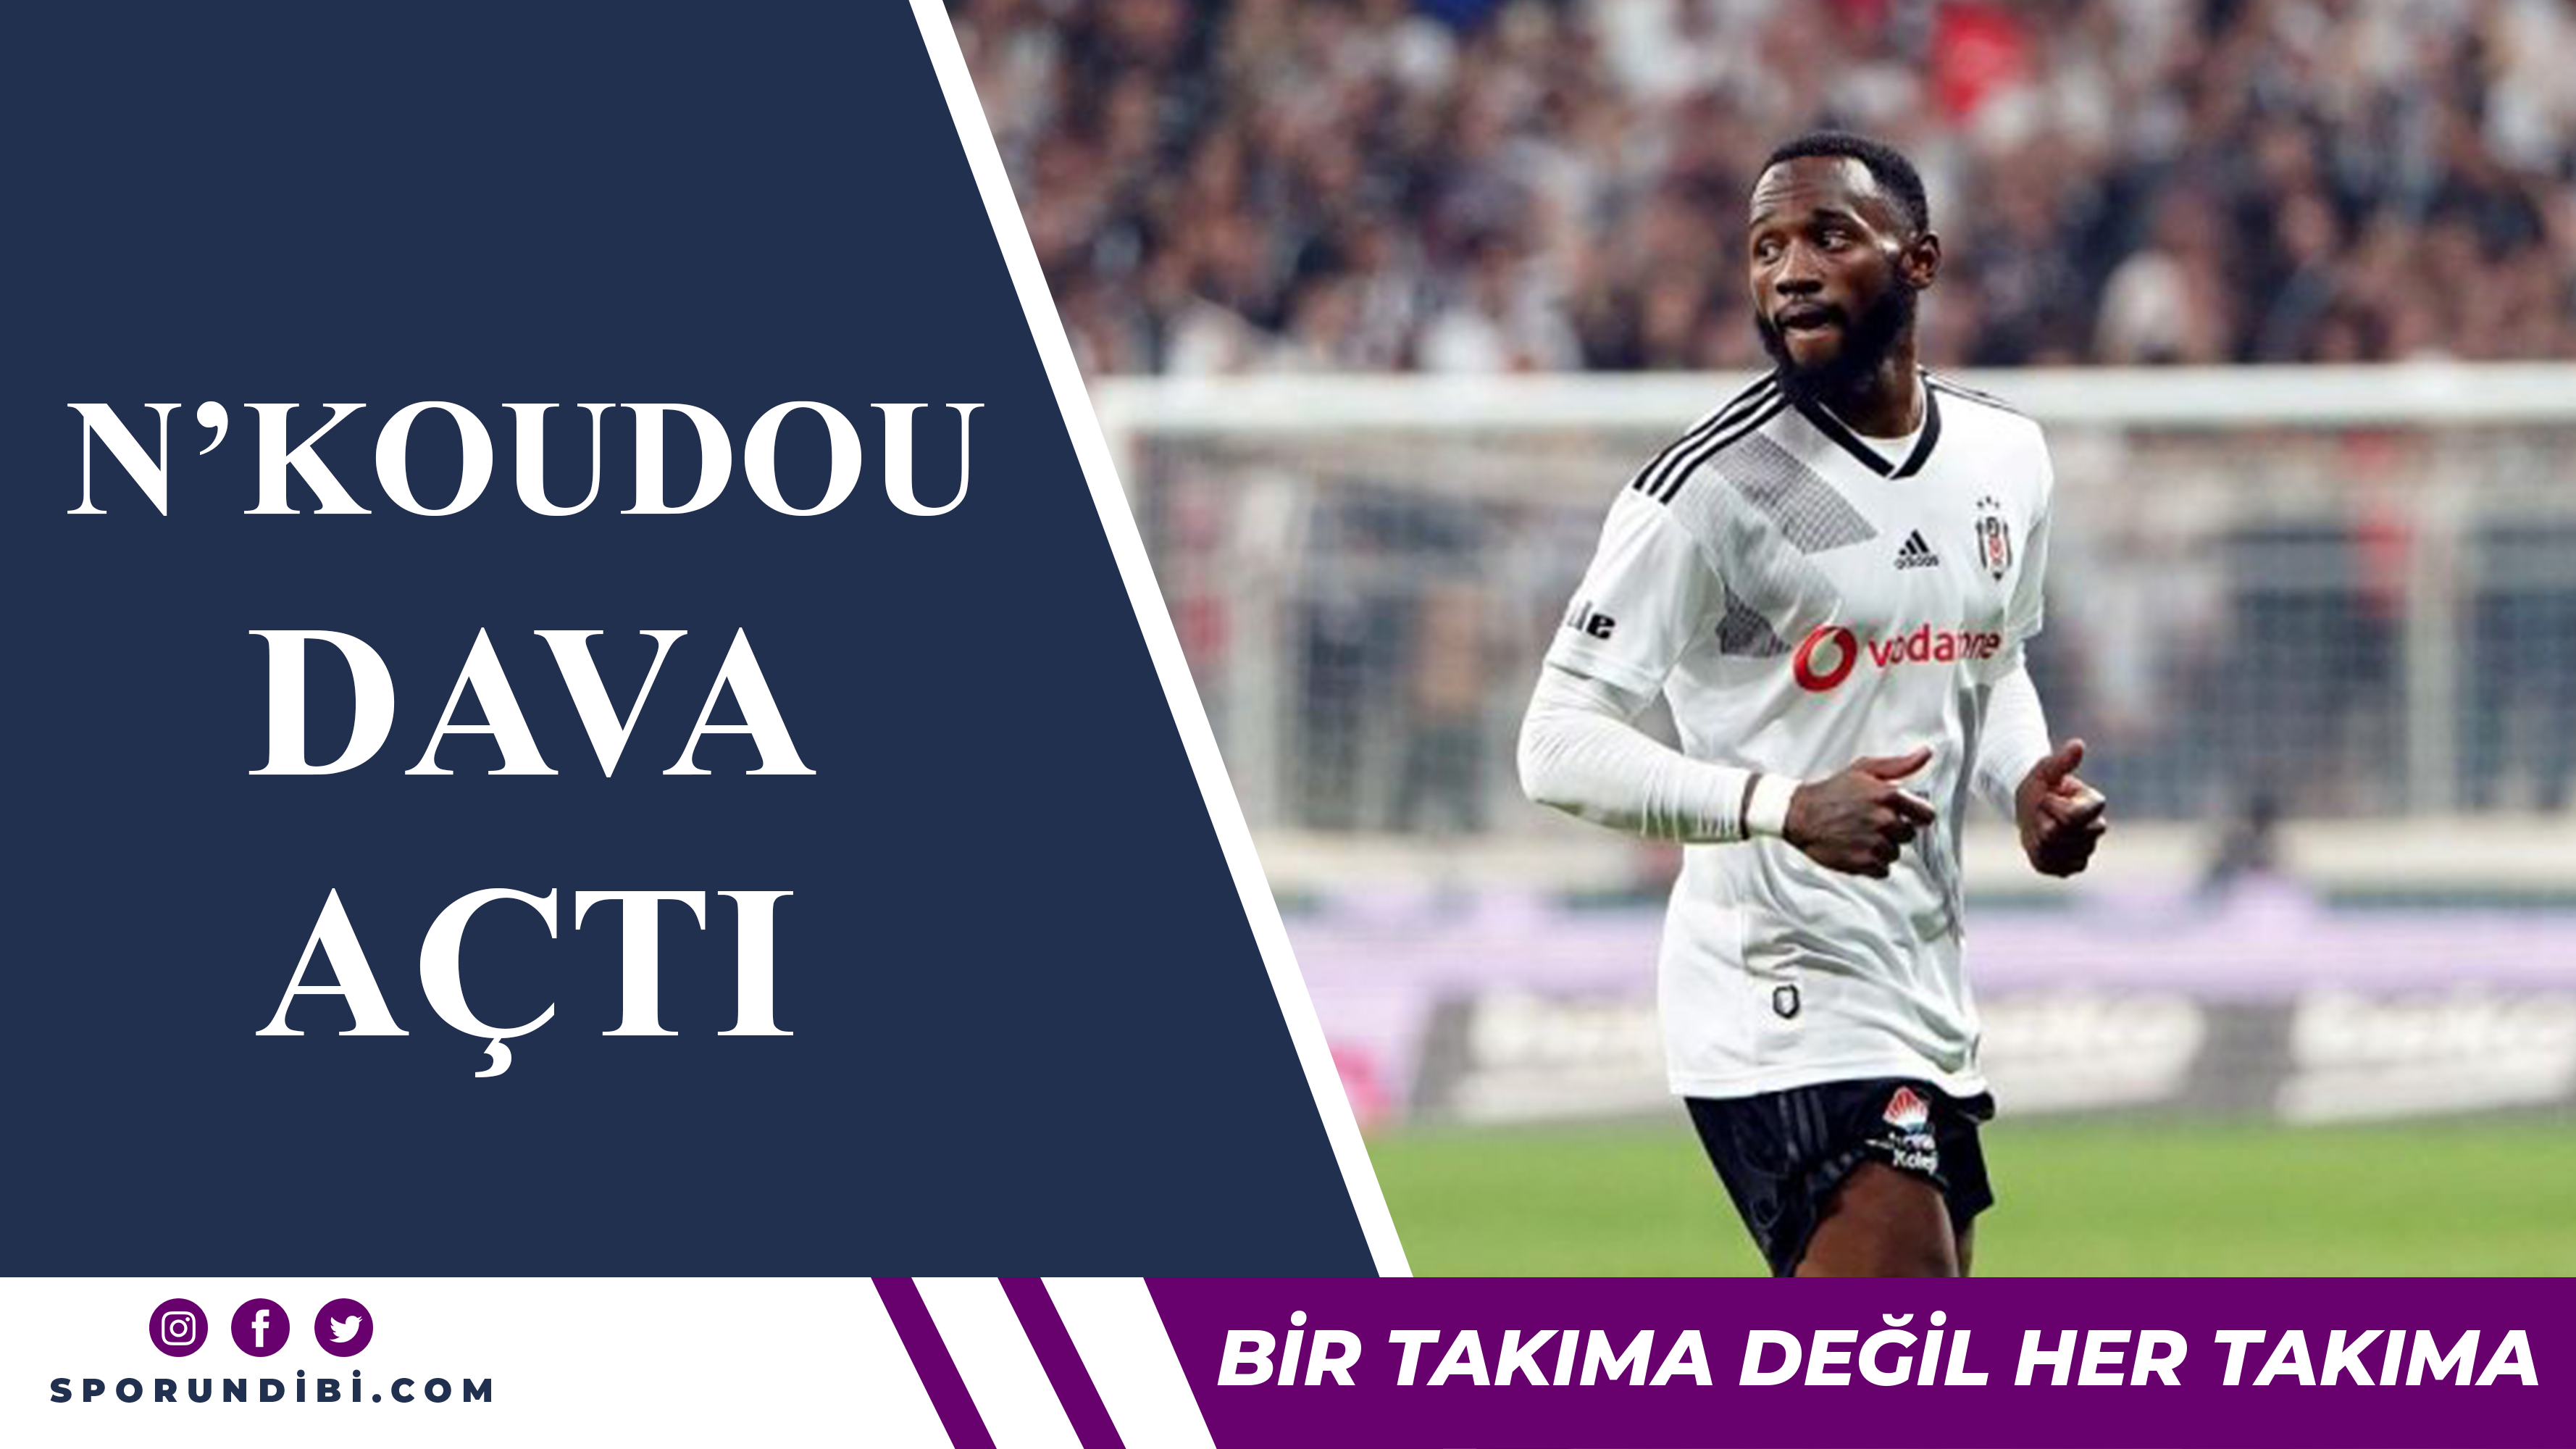 N'koudou Beşiktaş'a dava açtı!